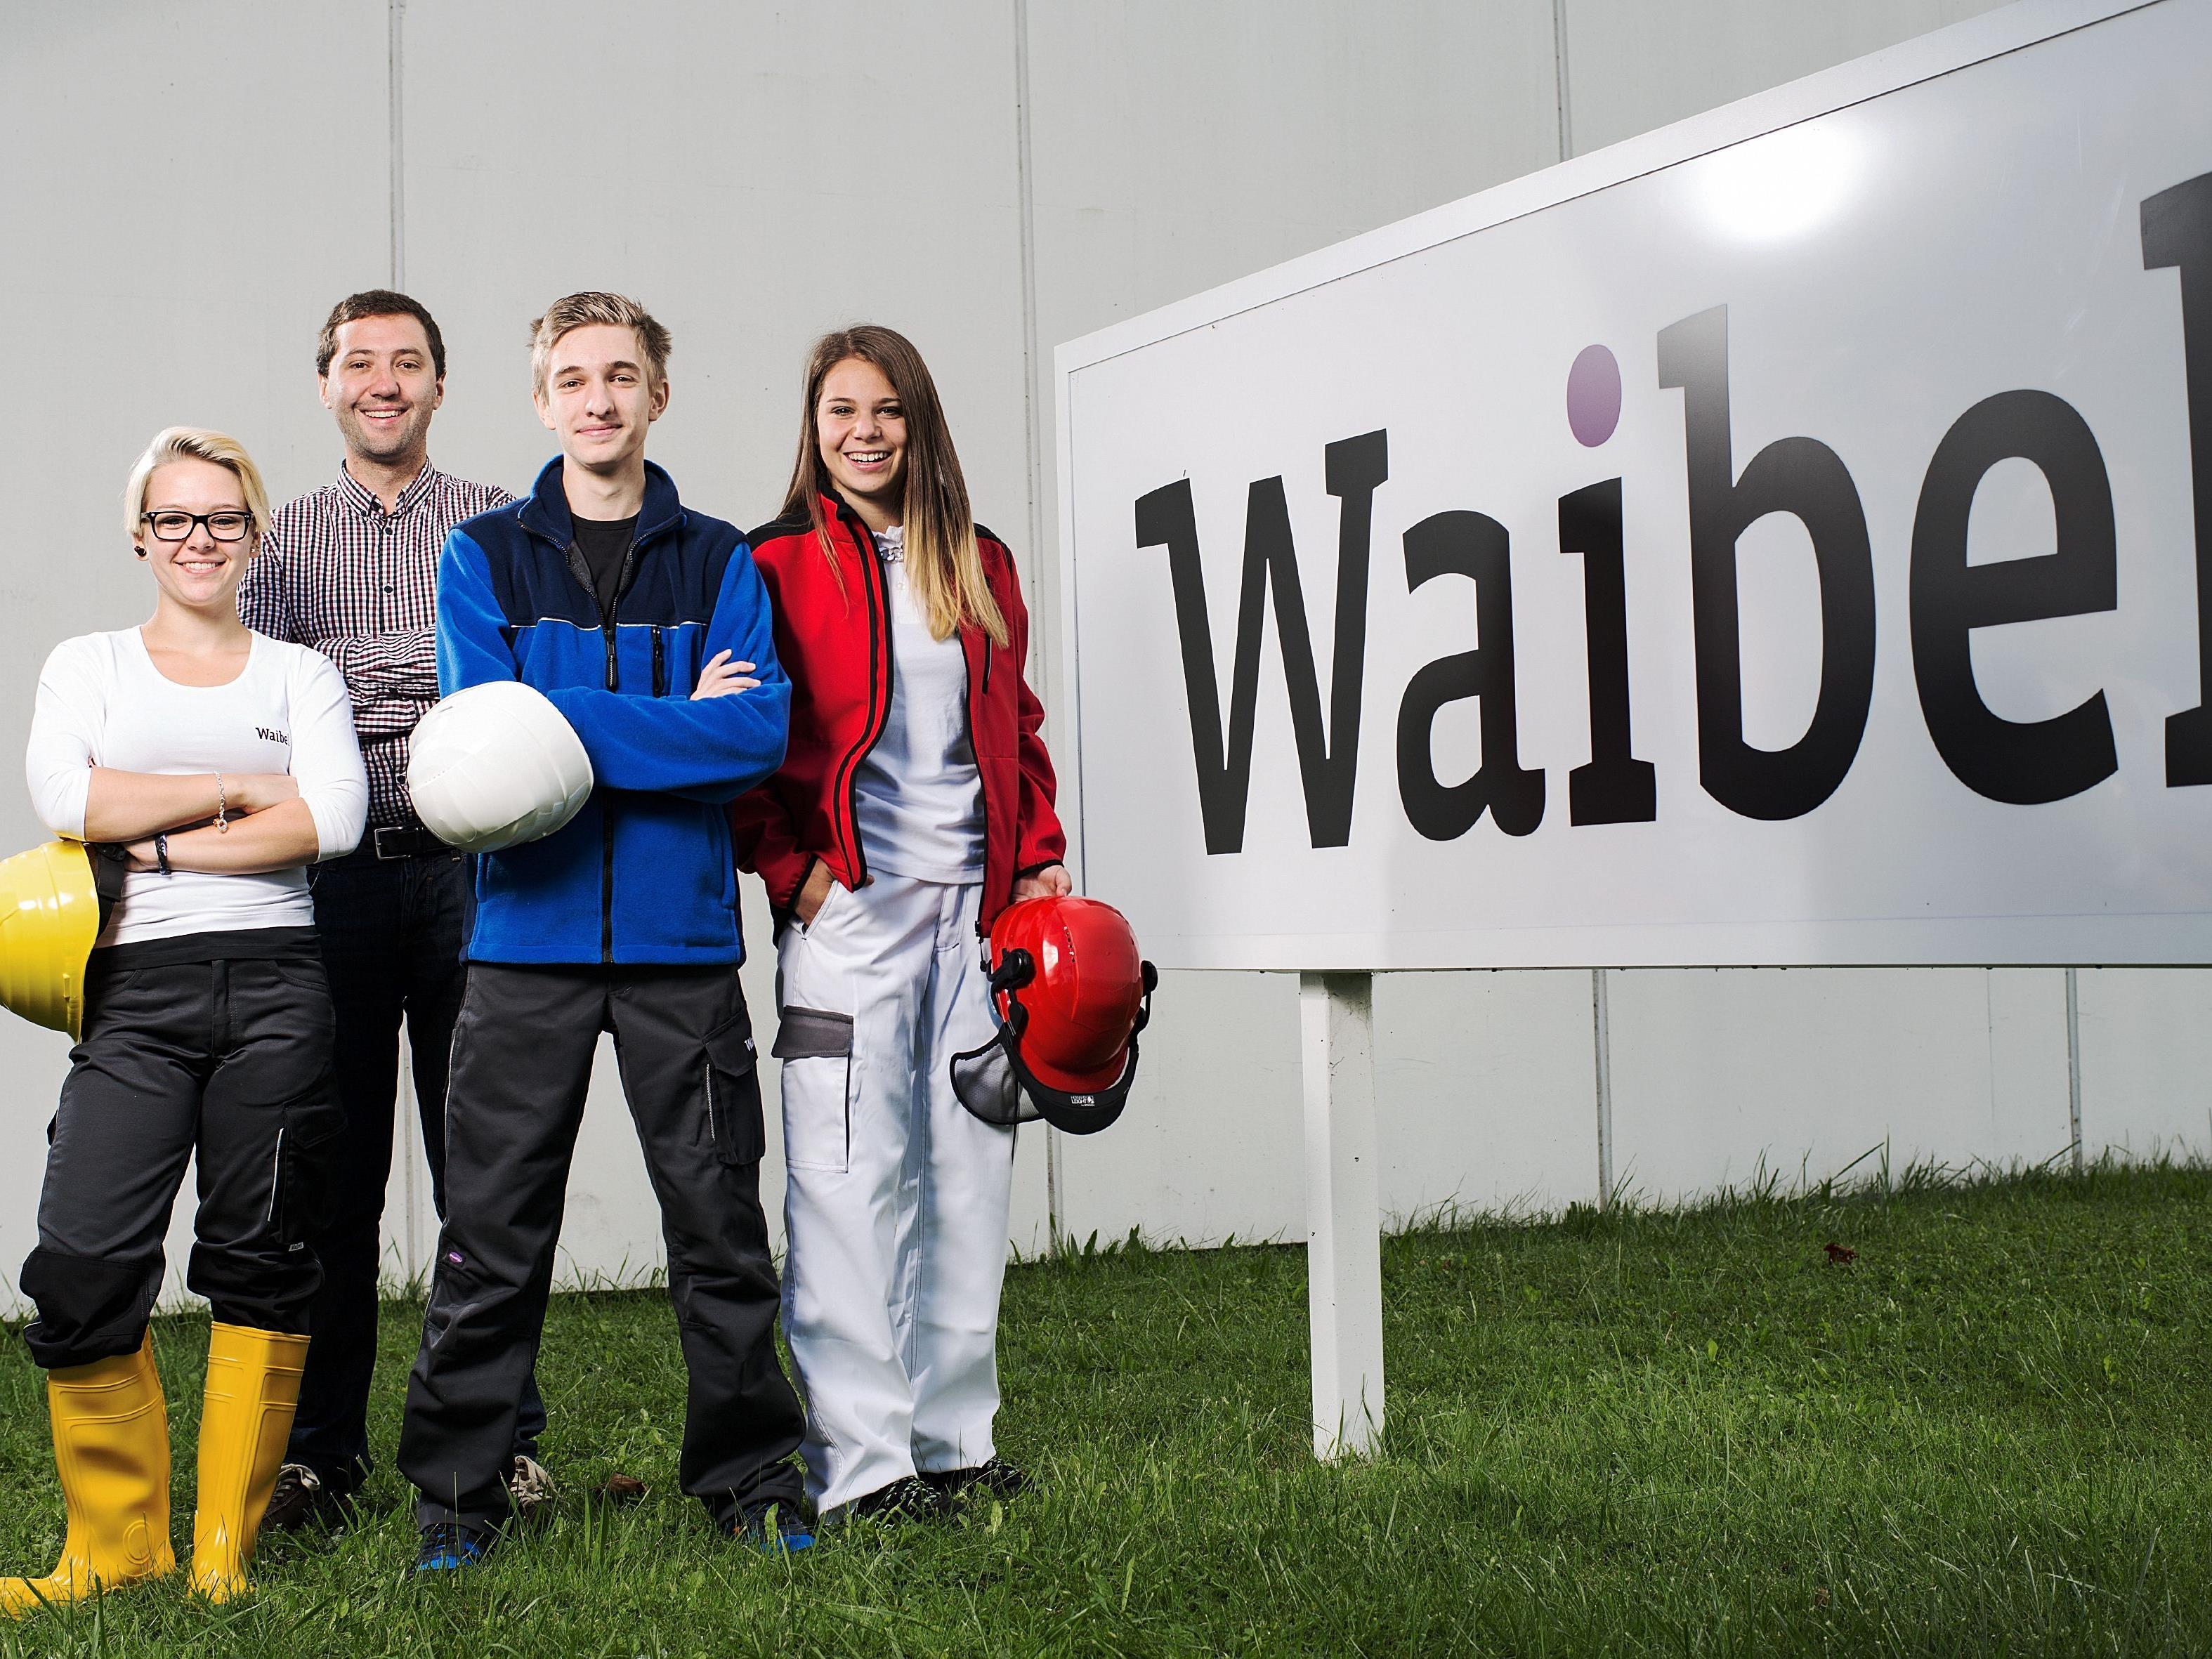 Geschäftsführer Richard Waibel ist für die Lehrlingsausbildung im Familienbetrieb verantwortlich. Von links nach rechts: Melissa Peter, Richard Waibel, Fabio Venier und Katharina Schatzmann.